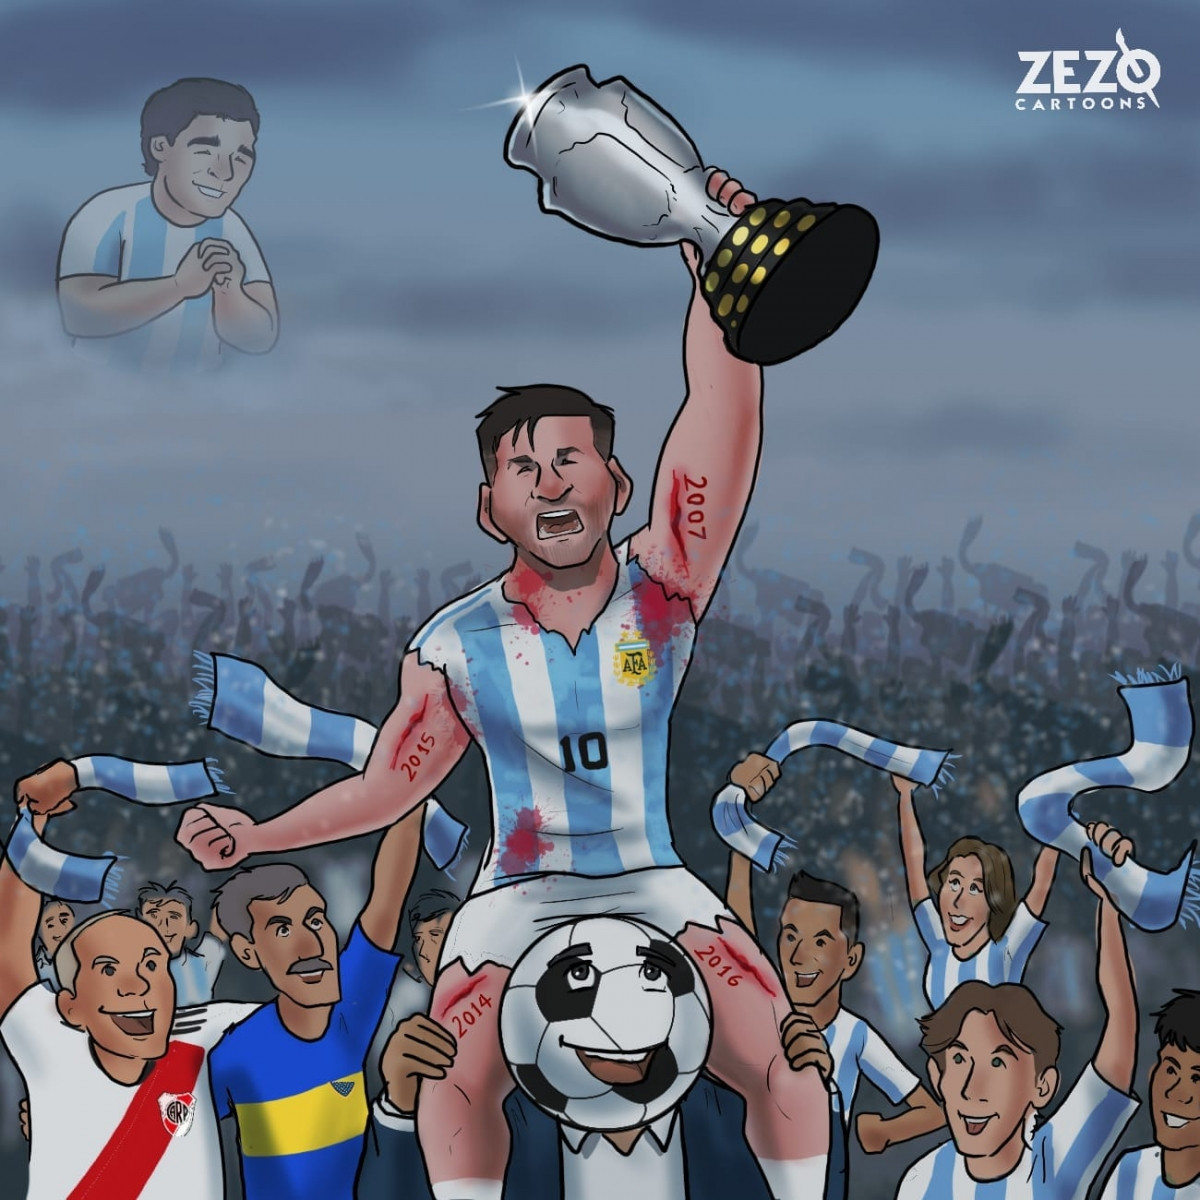 Messi đã đoạt được danh hiệu đầu tiên cùng ĐT Argentina sau rất nhiều lần thất bại ở các trận chung kết. (Ảnh: Zezo Cartoons). 